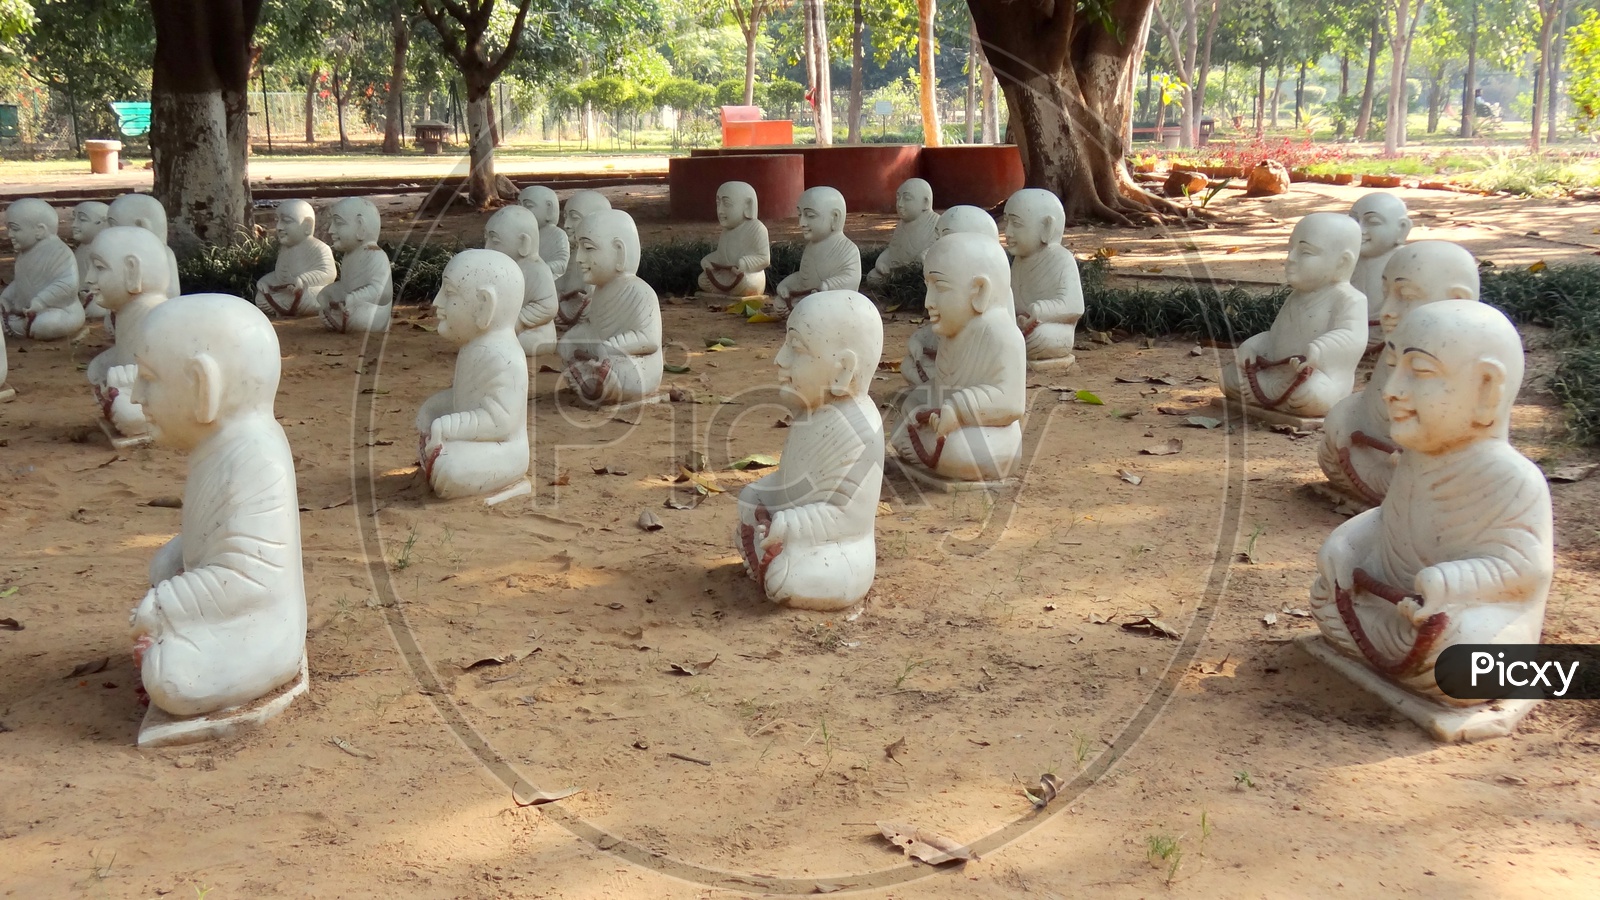 Statues of disciples meditating!